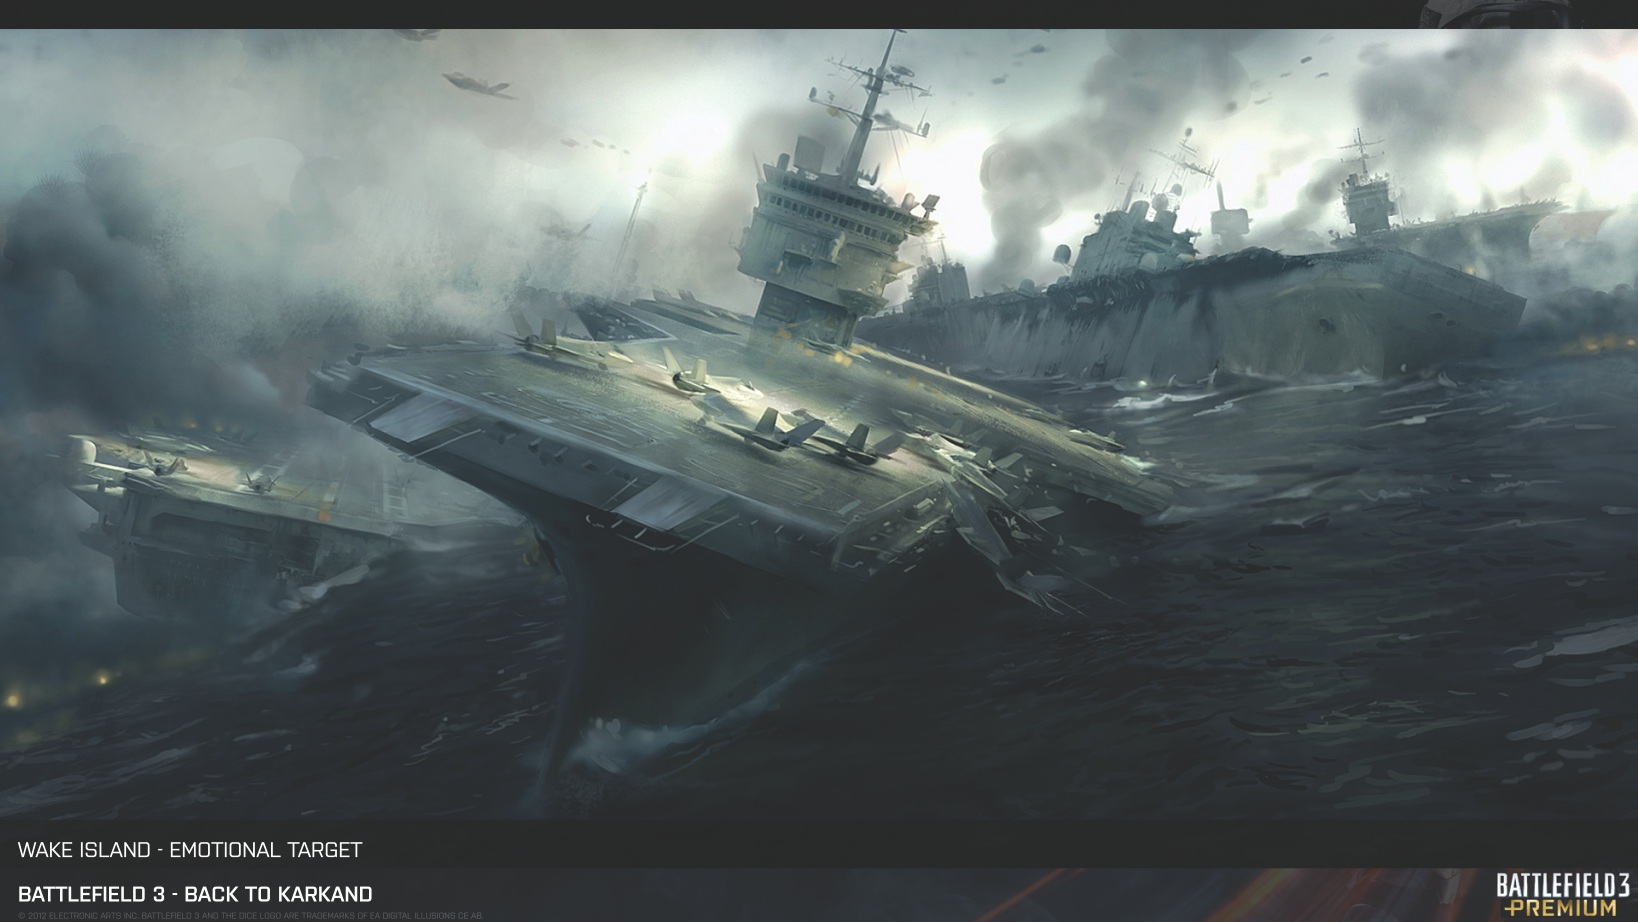 Fond D Ecran Battlefield 3 Navires De Guerres Gratuit Fonds Ecran Battlefield 3 Navires De Guerre Fps Jeu Pc Ps3 Xbox Jeu De Guerre Tir Armee